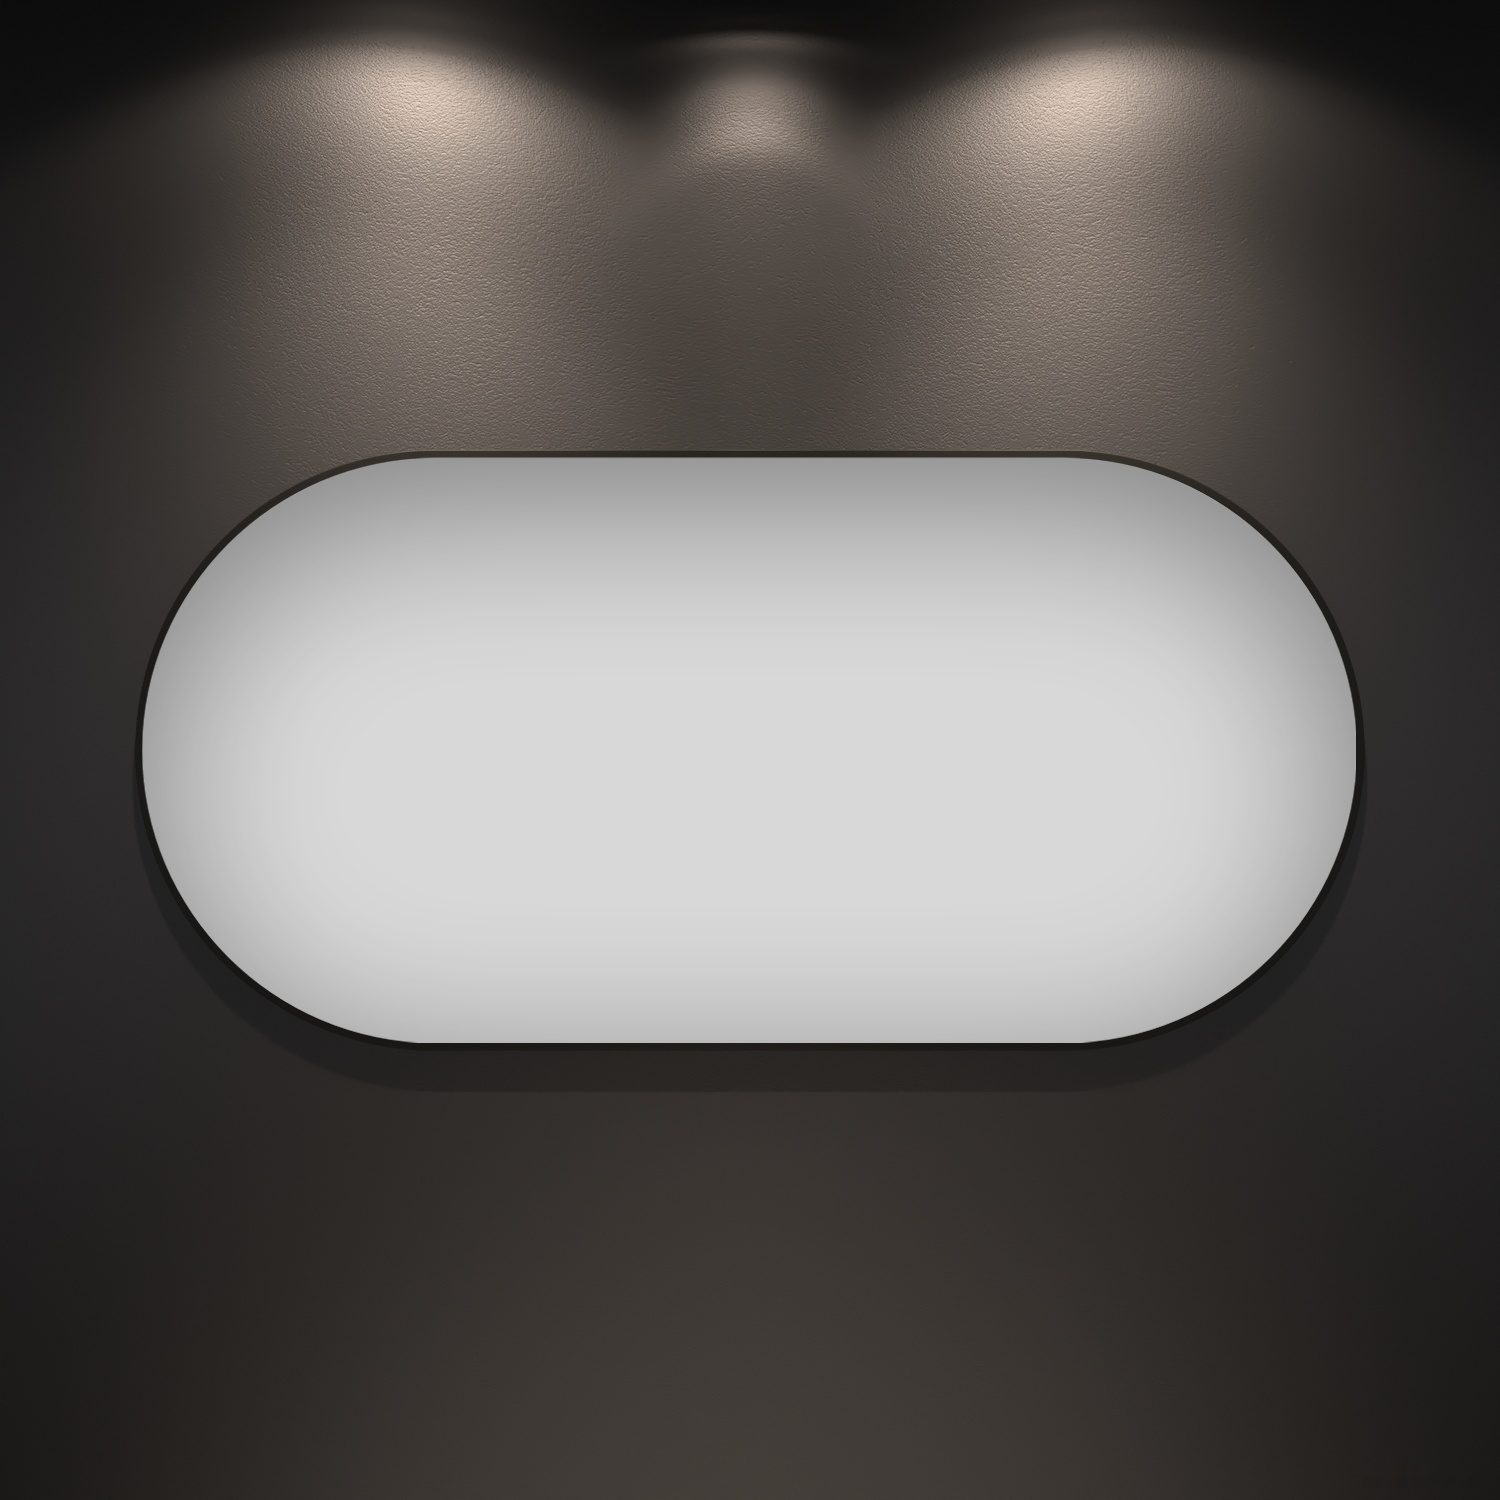 зеркало wellsee зеркало 7 rays' spectrum 172201490, 120 х 60 см